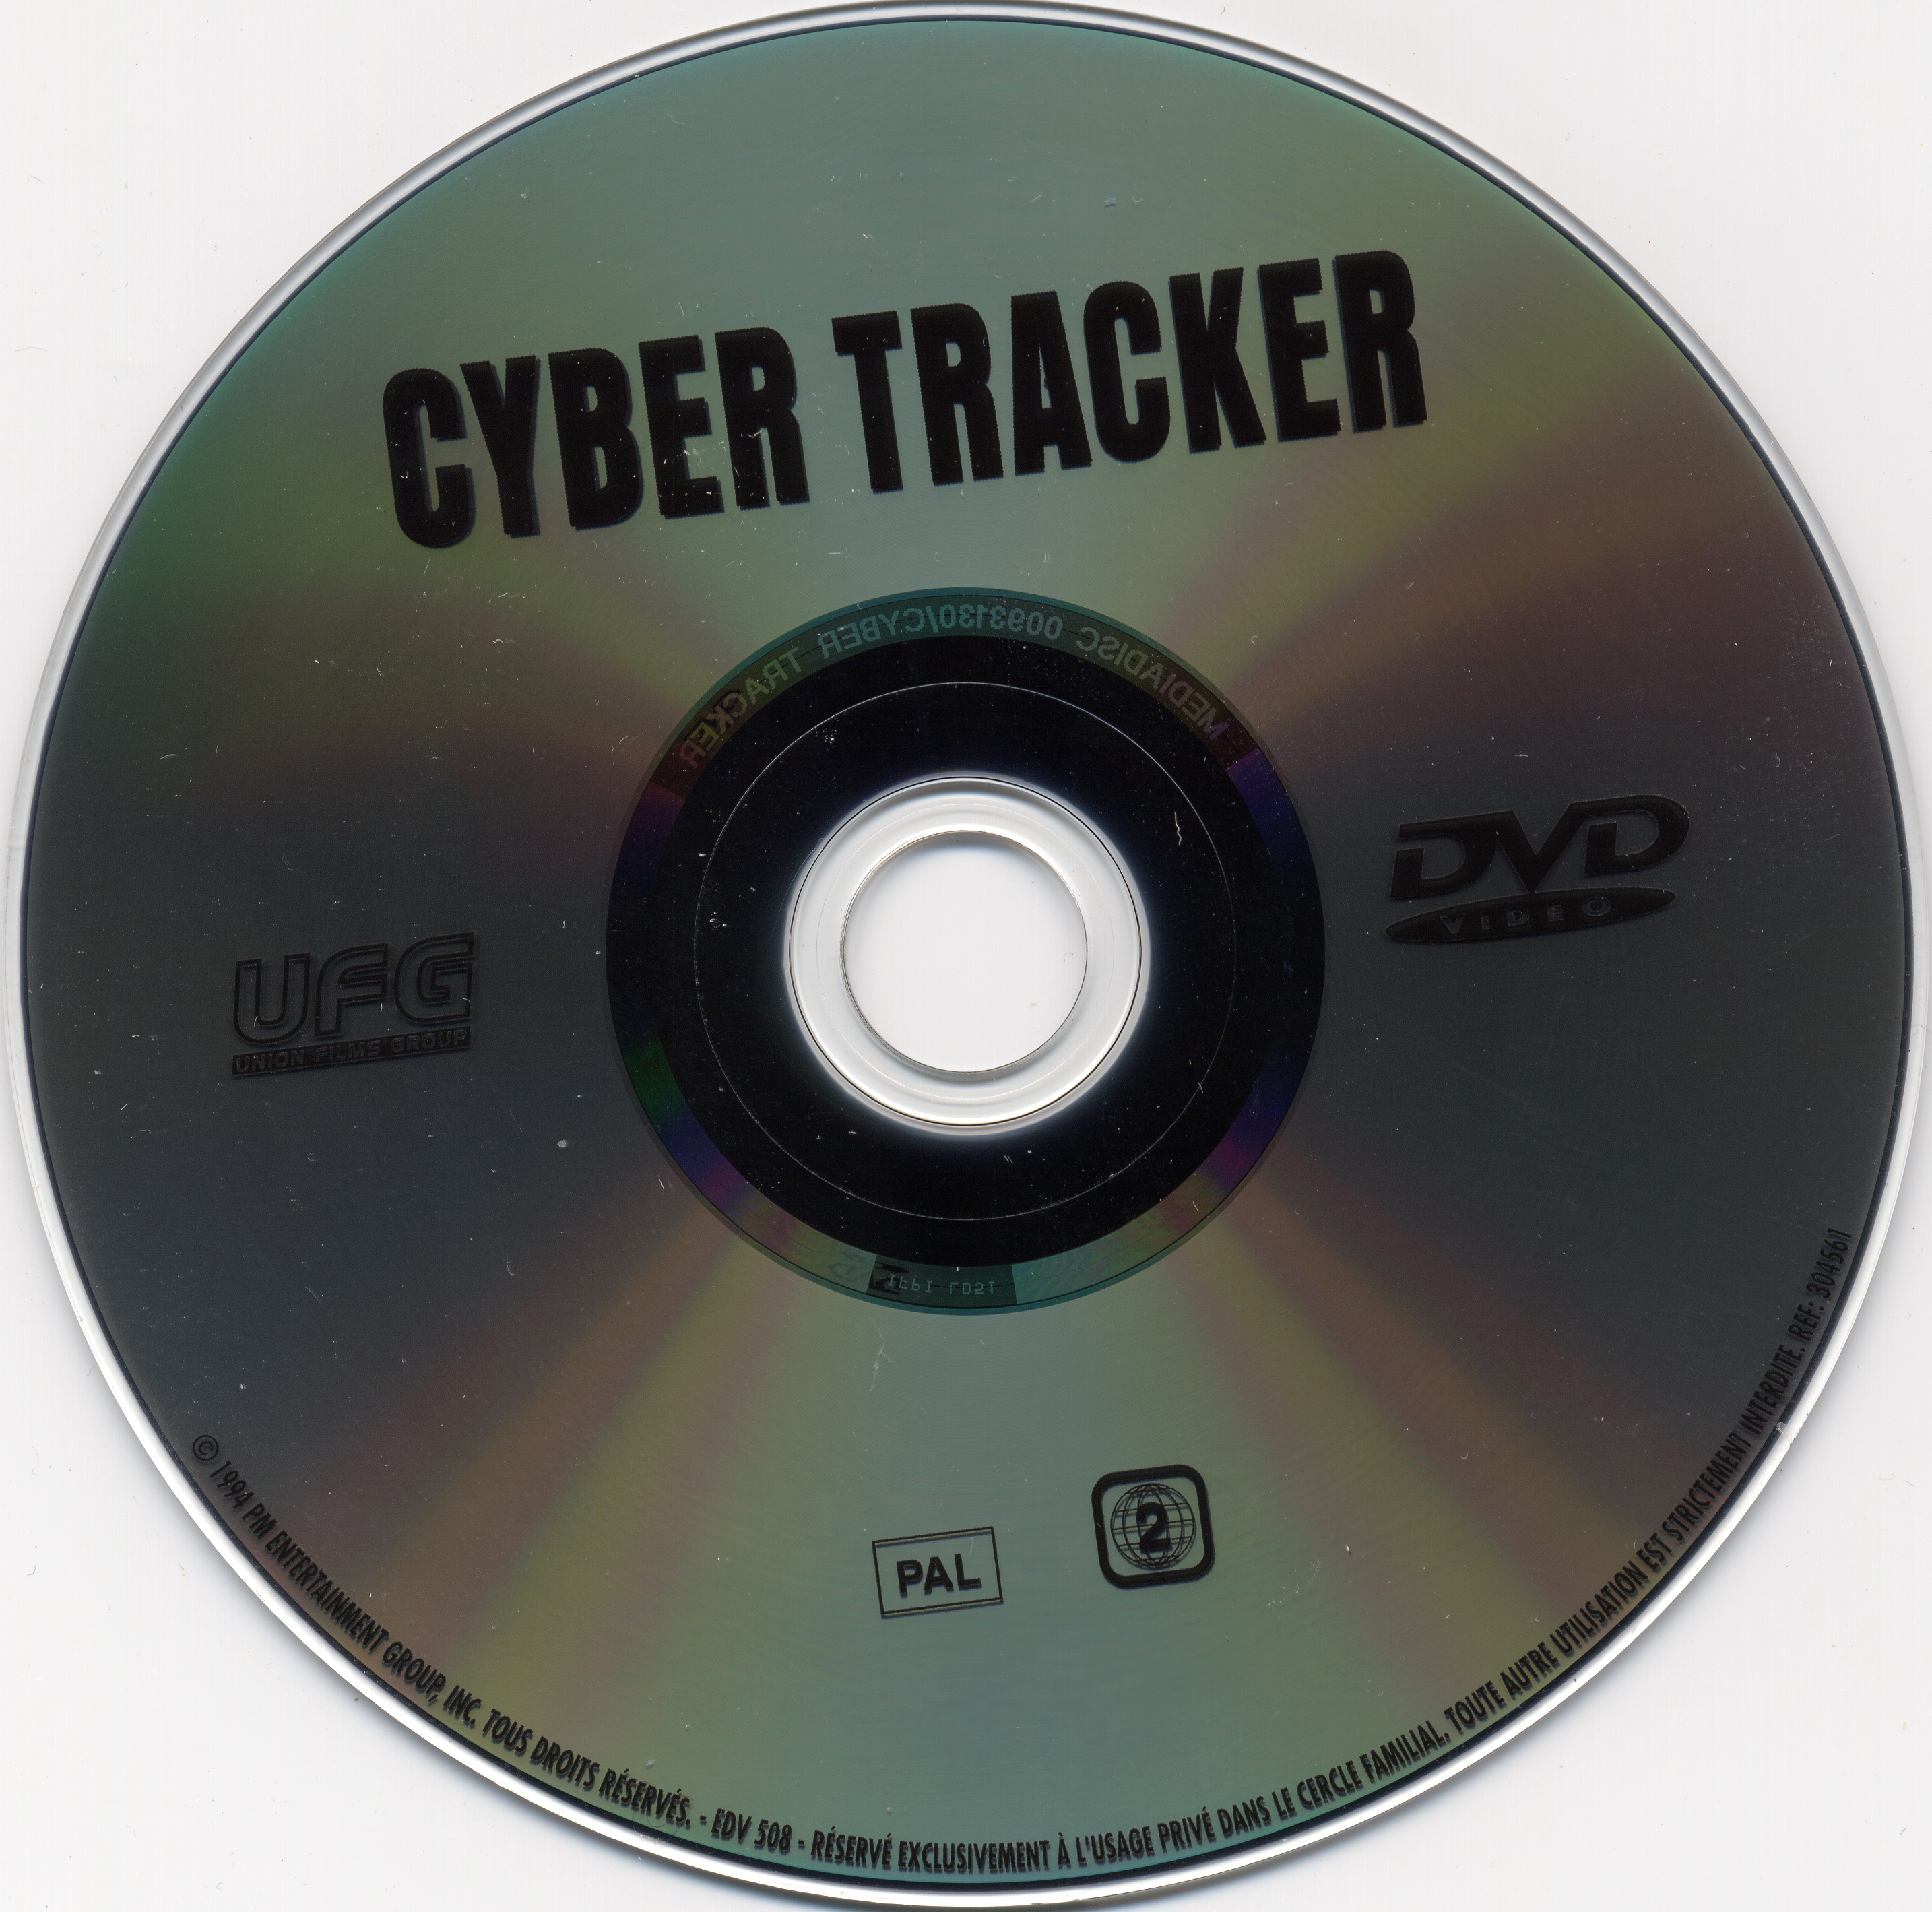 Cyber tracker